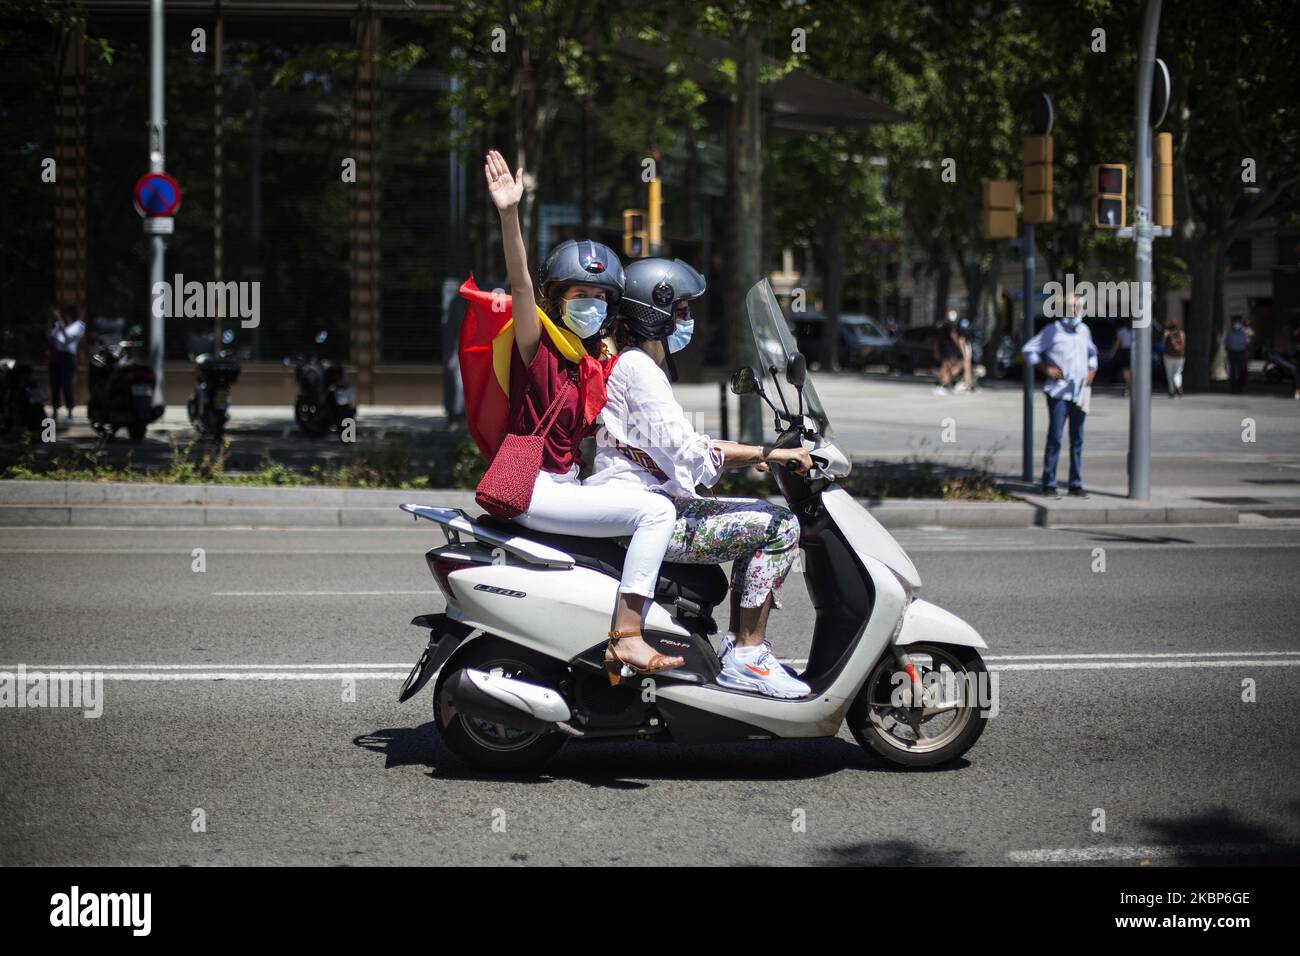 Un manifestant rend hommage au fasciste lors de la manifestation organisée dans tout le territoire espagnol par le parti d'extrême droite VOX, à Barcelone, en Espagne, sur 23 mai 2020. (Photo de Robert Bonet/NurPhoto) Banque D'Images